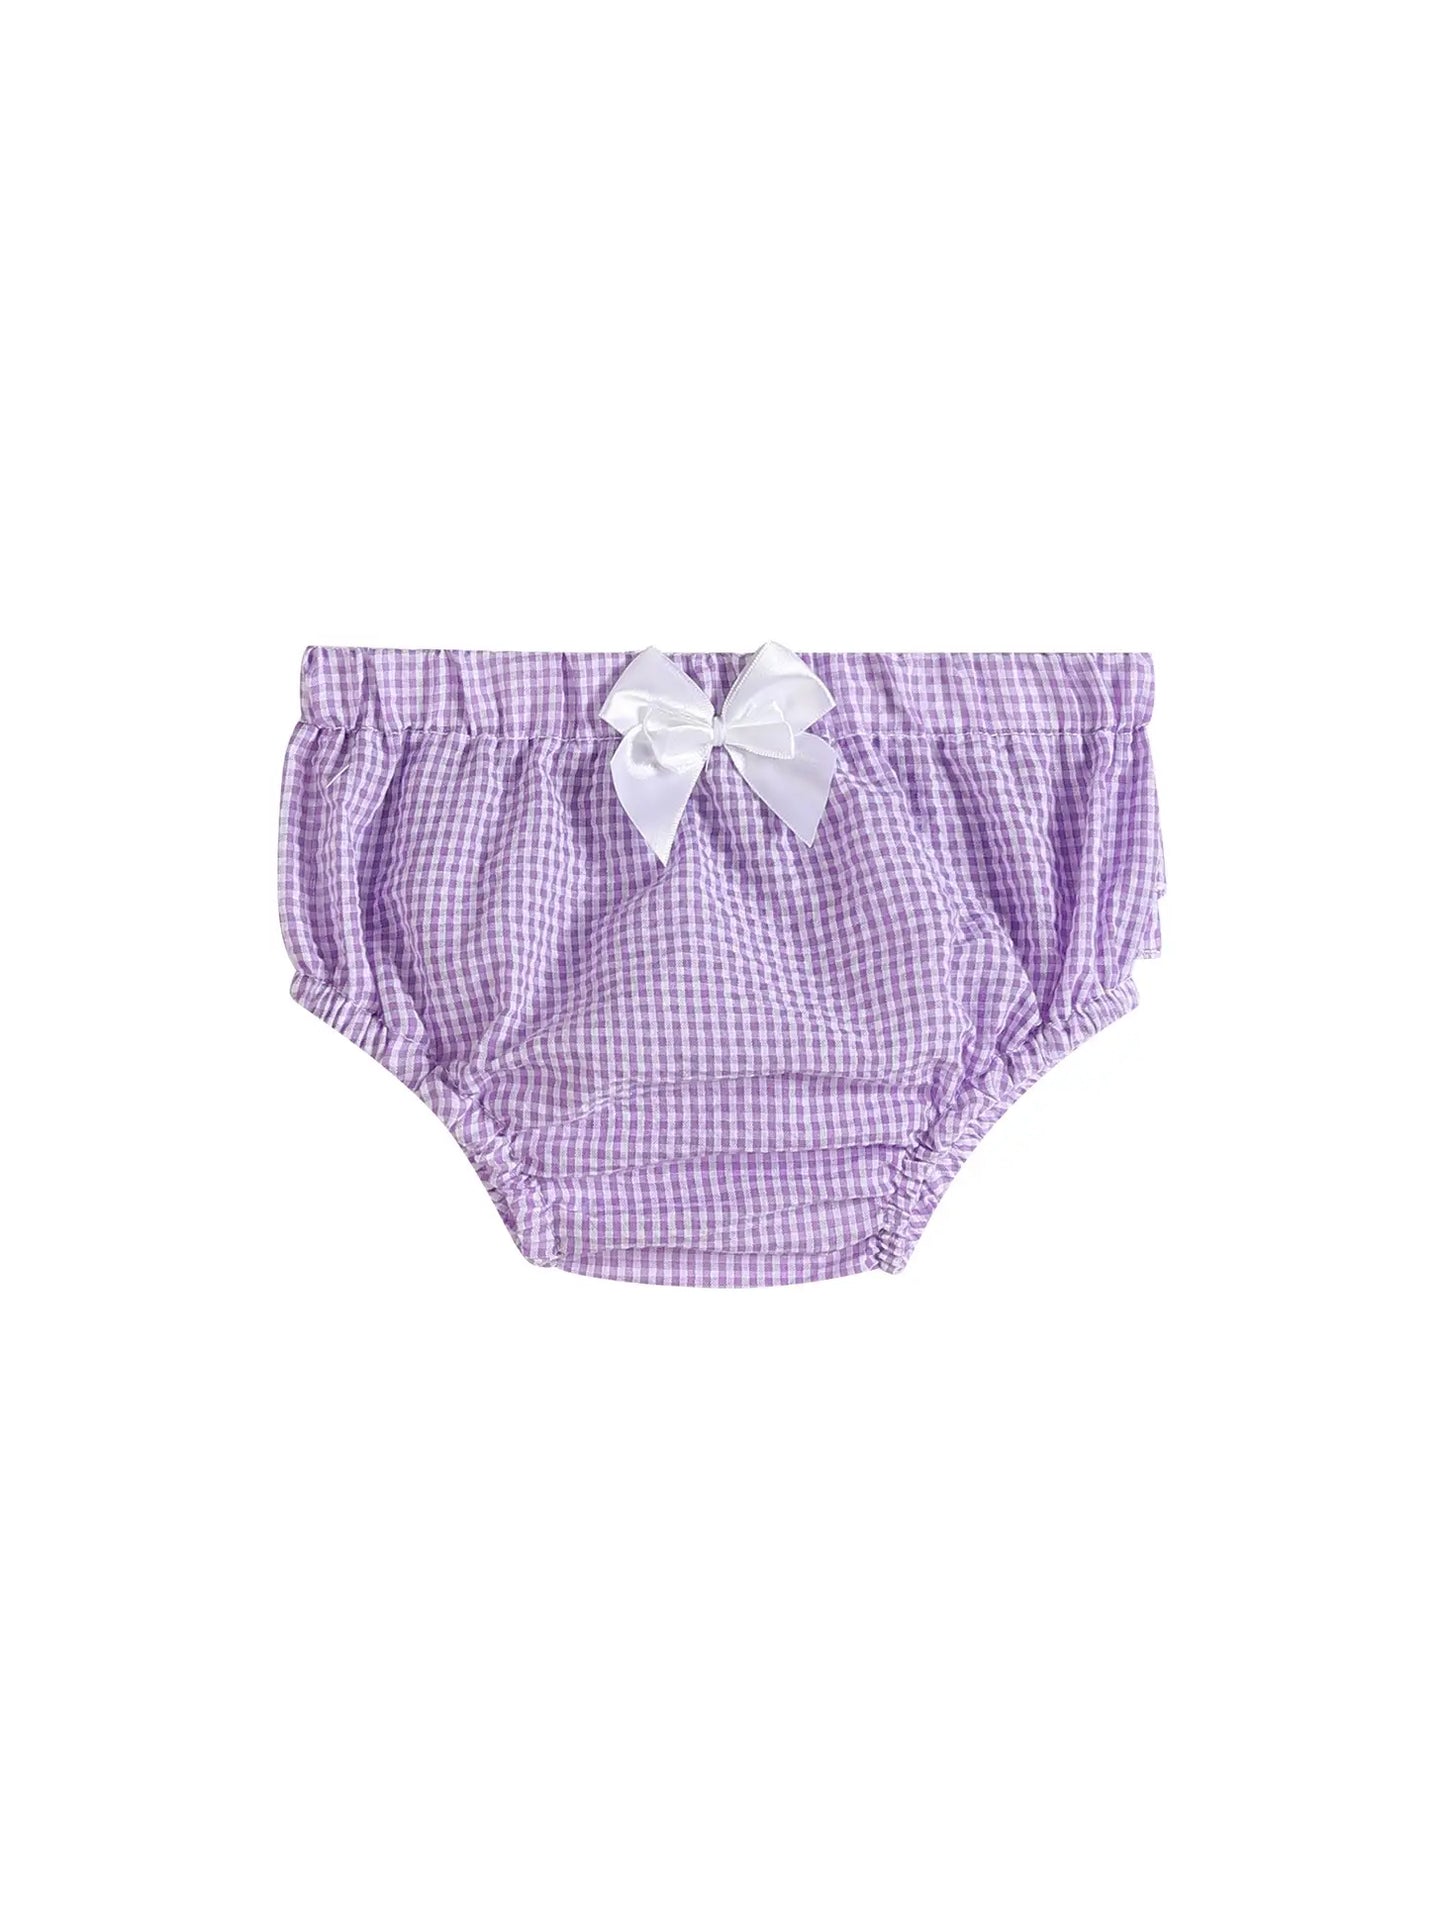 Purple Seersucker Cotton Baby Bloomers